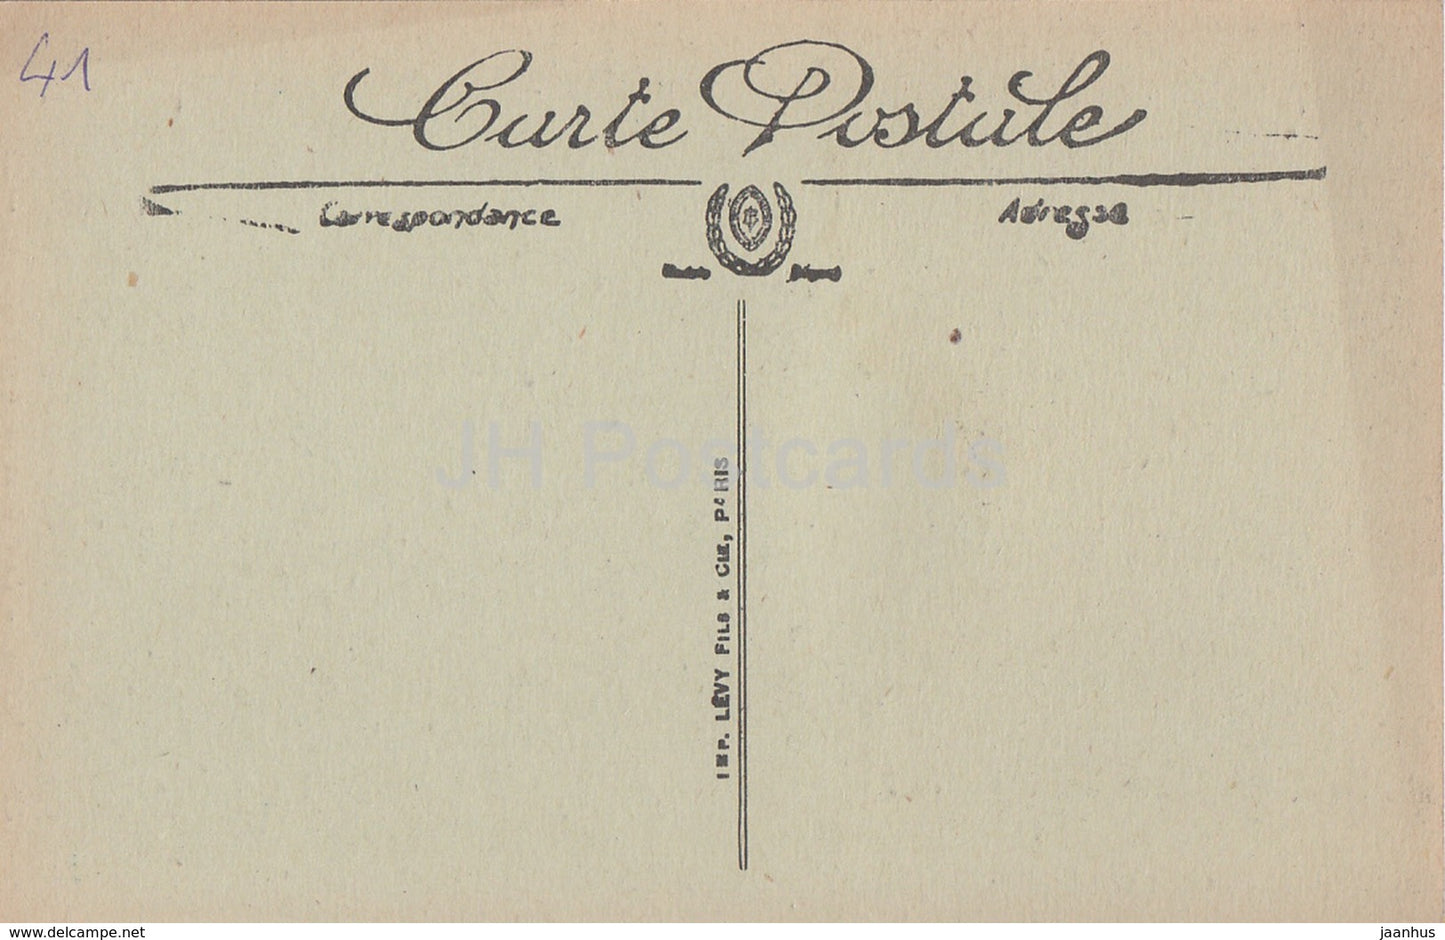 Blois - Le Chateau - Cul de Lampe - Schloss - 326 - alte Postkarte - Frankreich - unbenutzt